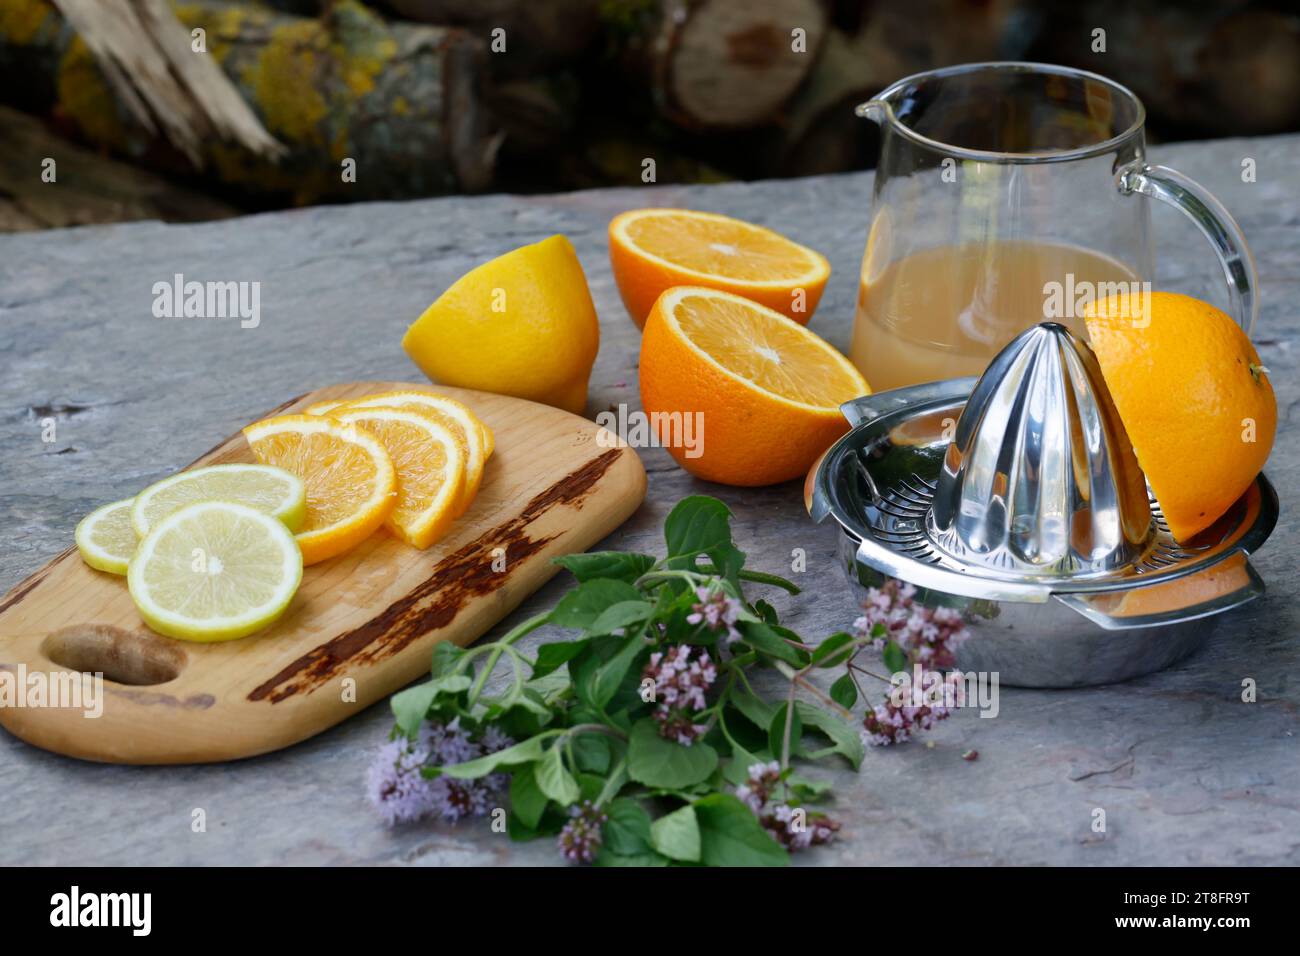 Eistee, Eis-Tee aus Kräutertee gemischt mit Apfelsaft, Saft von Orange, Saft von Zitrone, Iced Tea, Ice Tea Schritt 2: Zutaten - Kräutertee, Apfelsaf Foto Stock